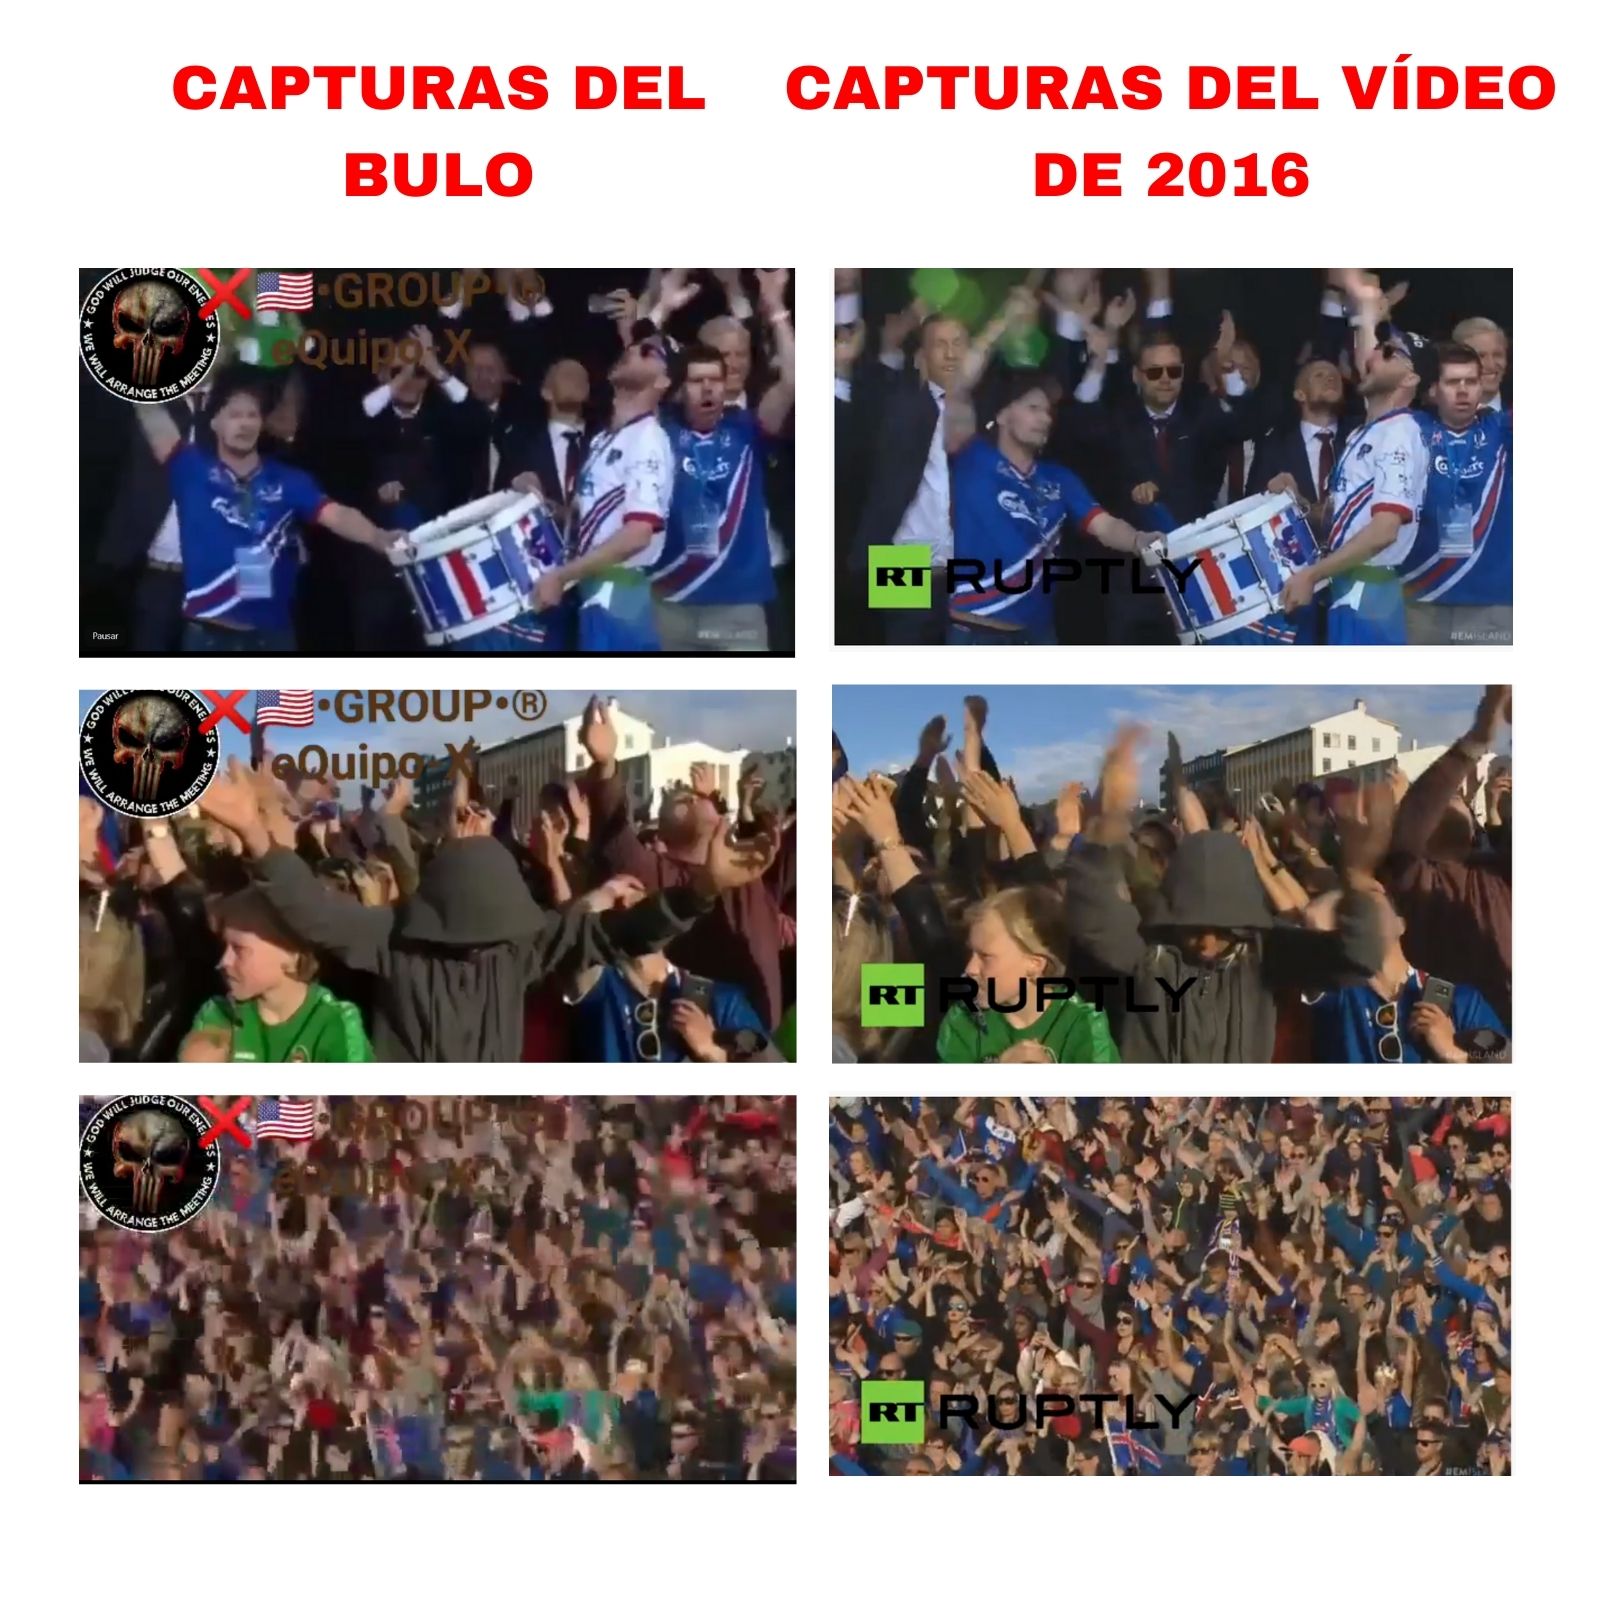 Capturas del bulo y del vídeo que se publicó en 2016.